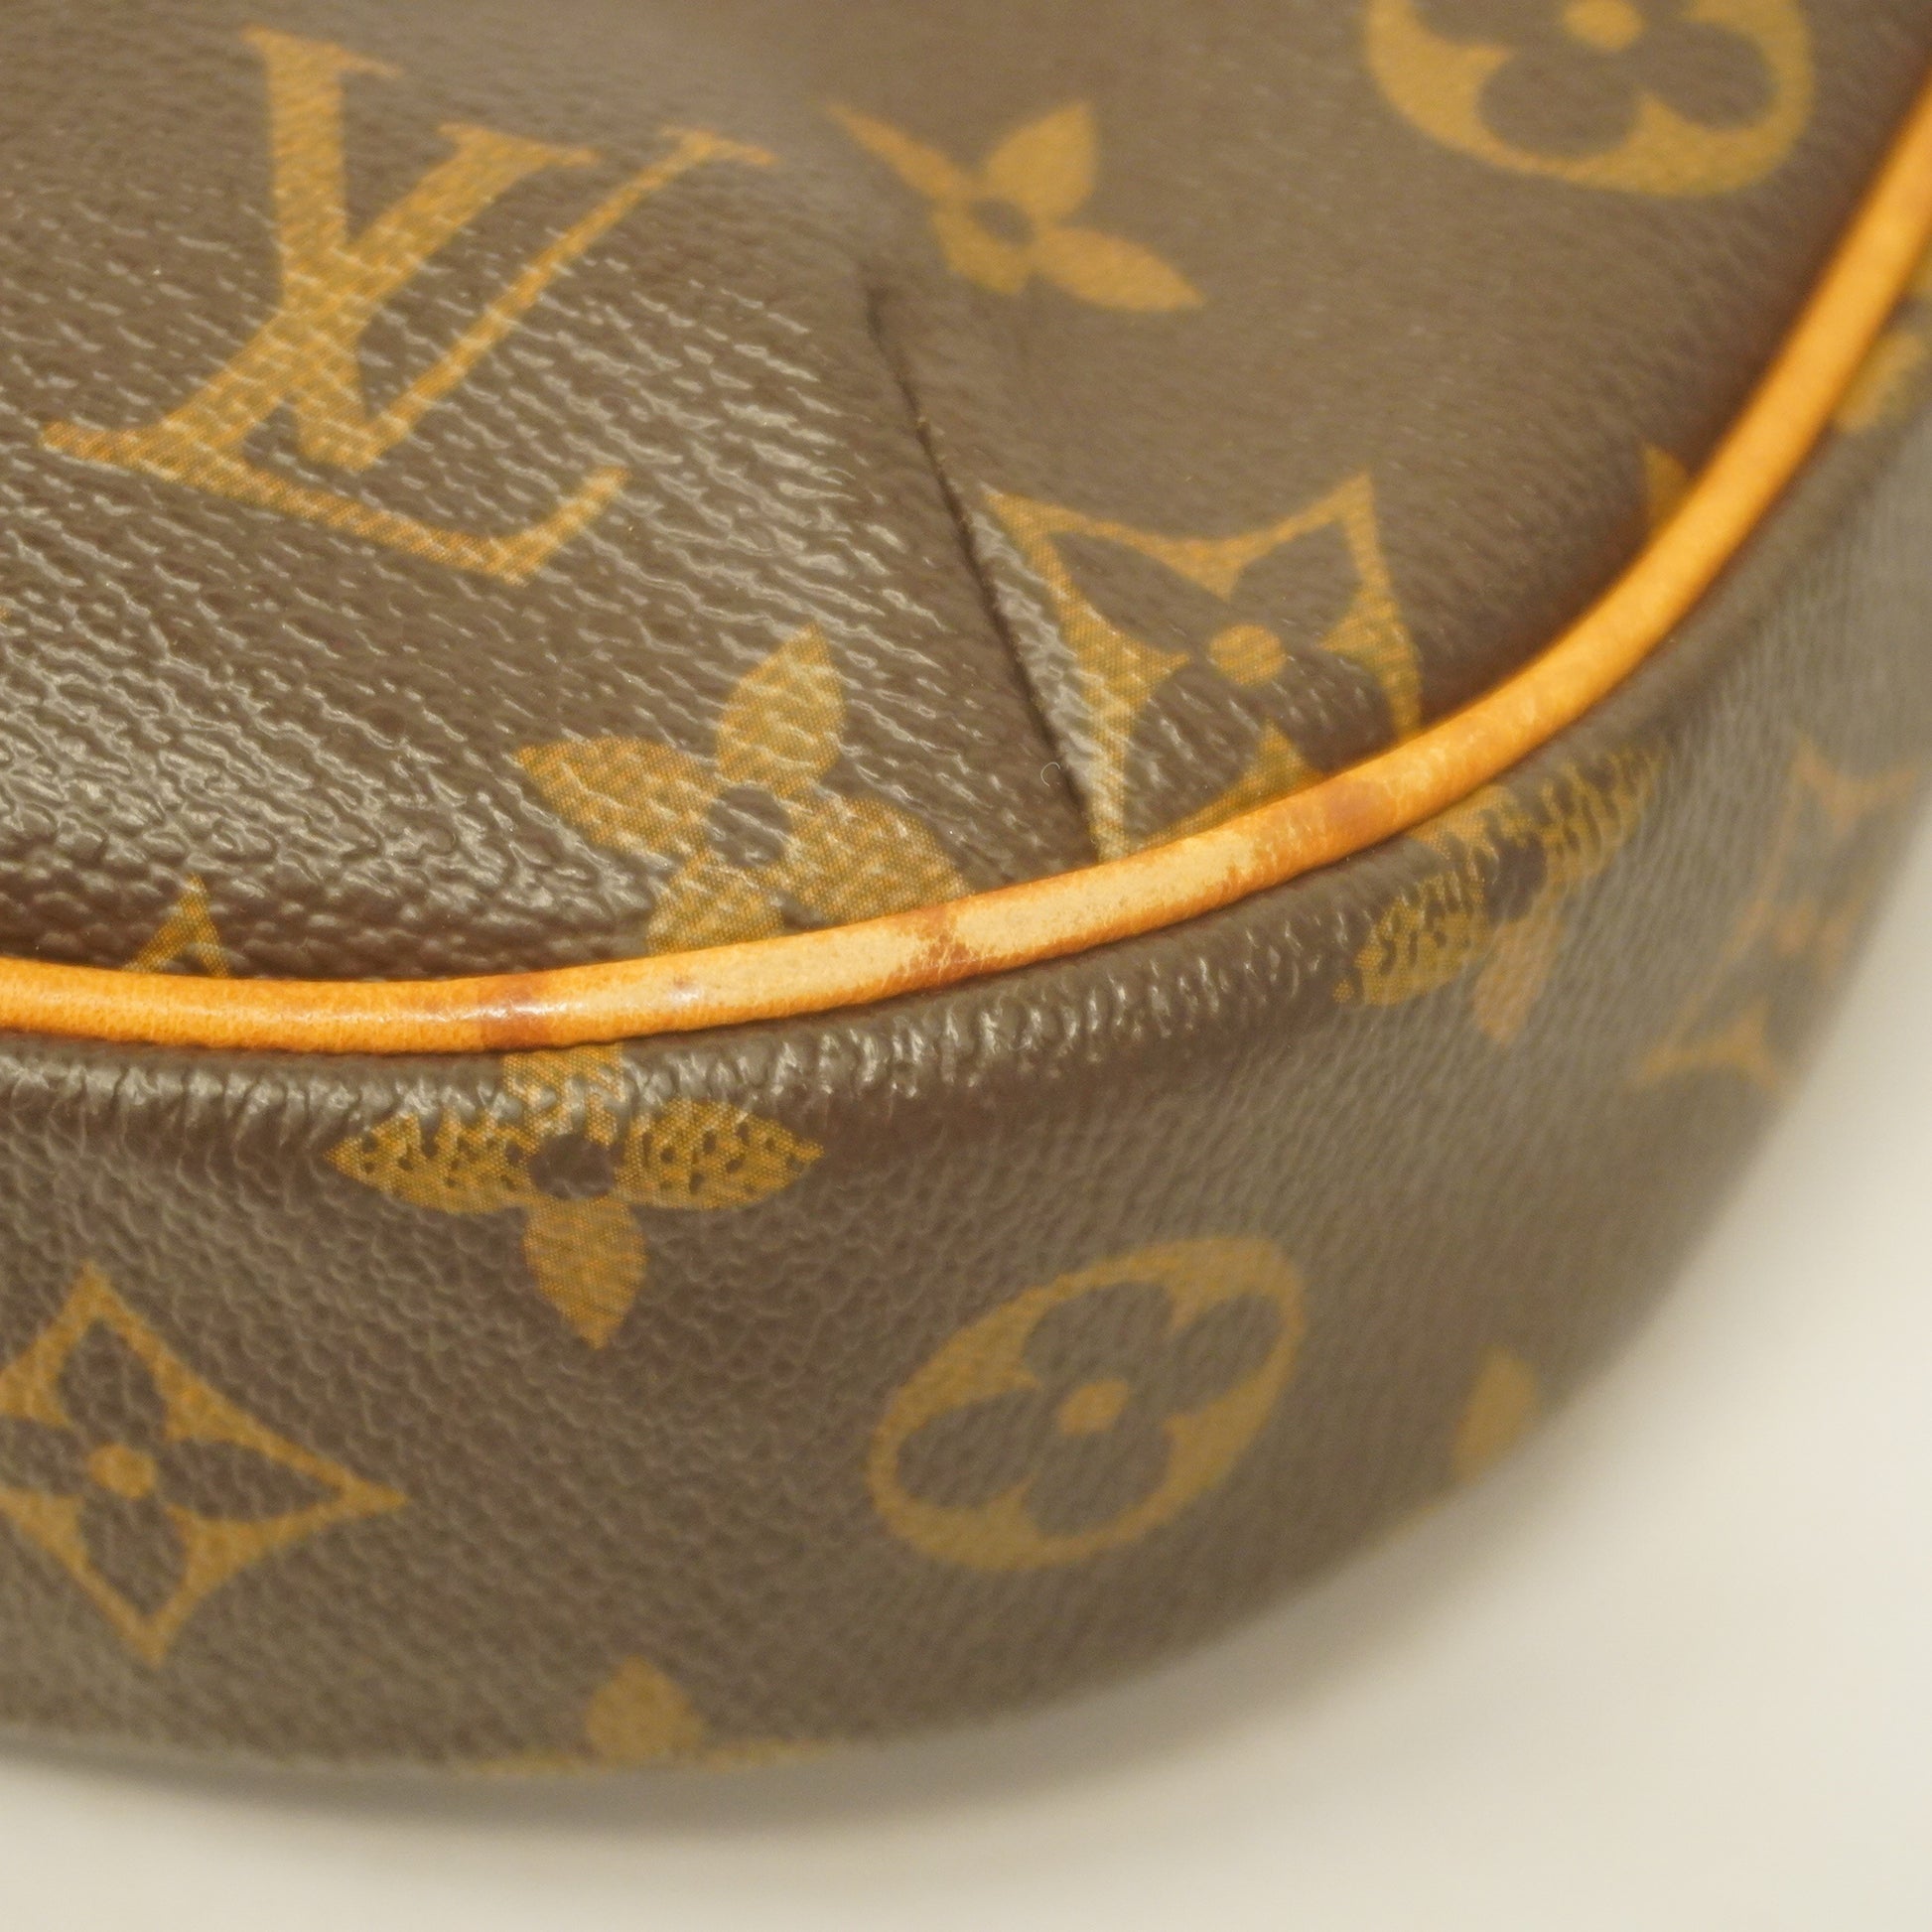 Louis Vuitton - Monogram Odeon PM Shoulder bag - Catawiki